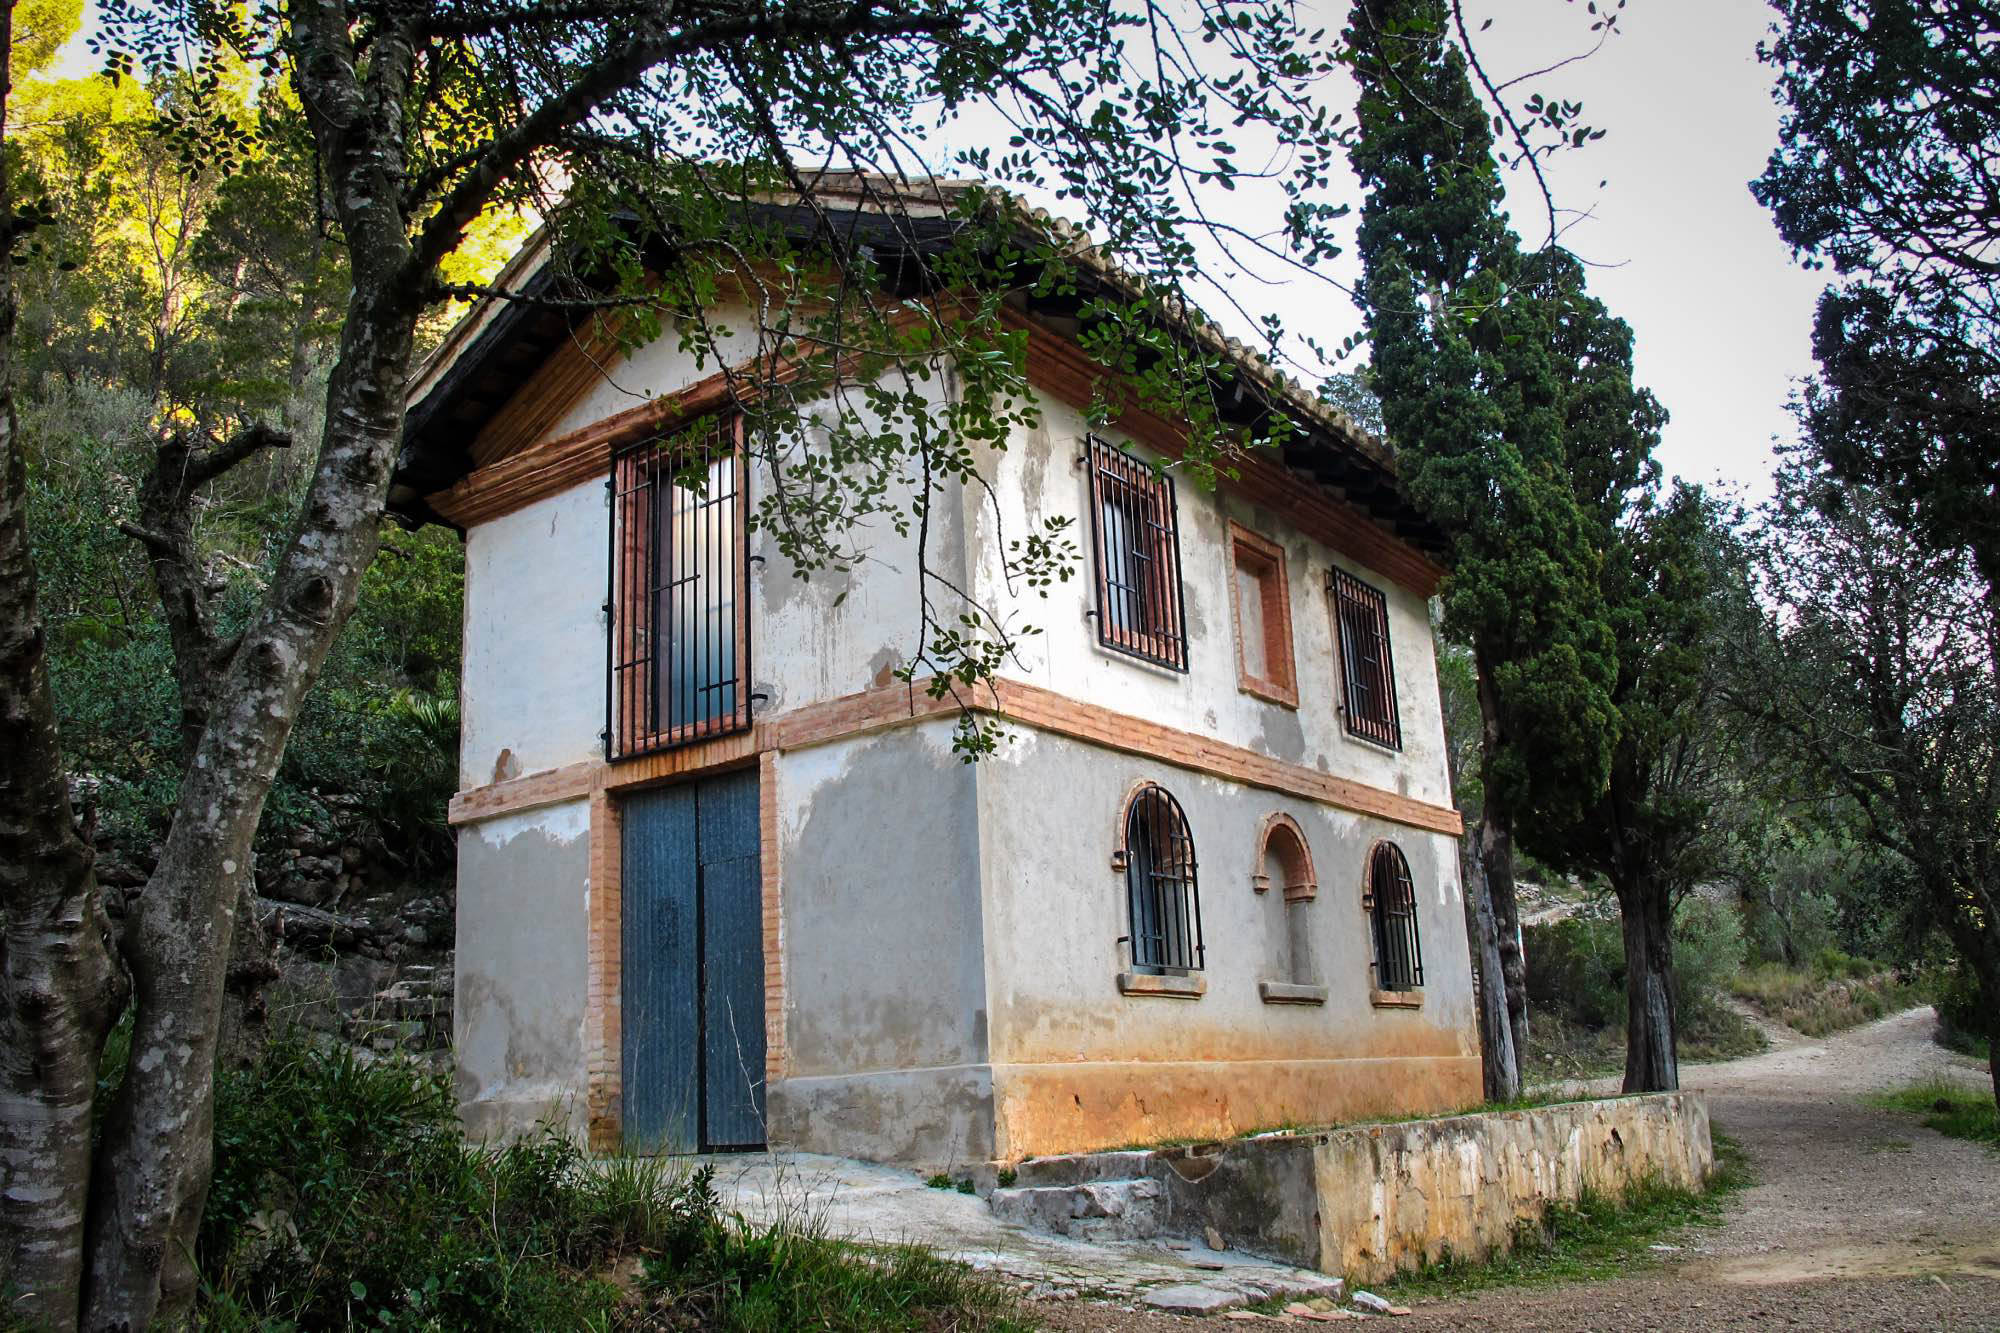 Casa Carvallo